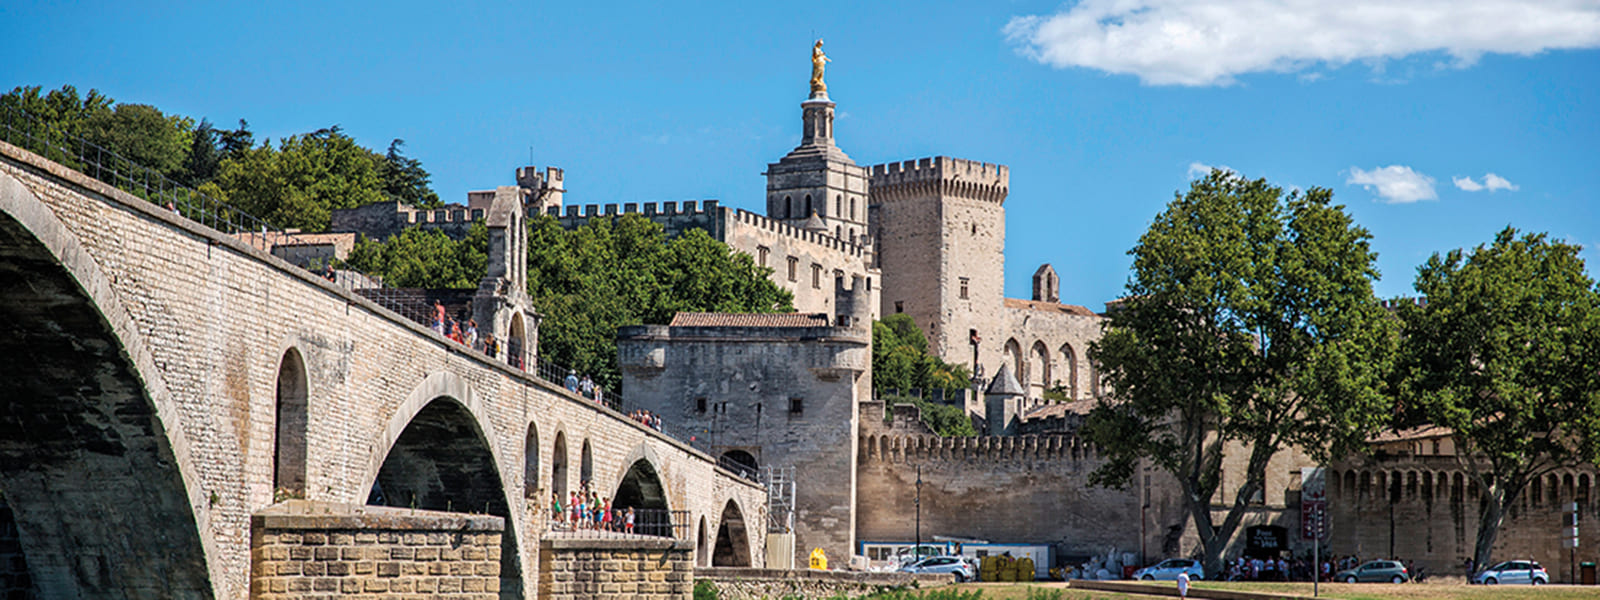 Borghi di Provenza - Avignone